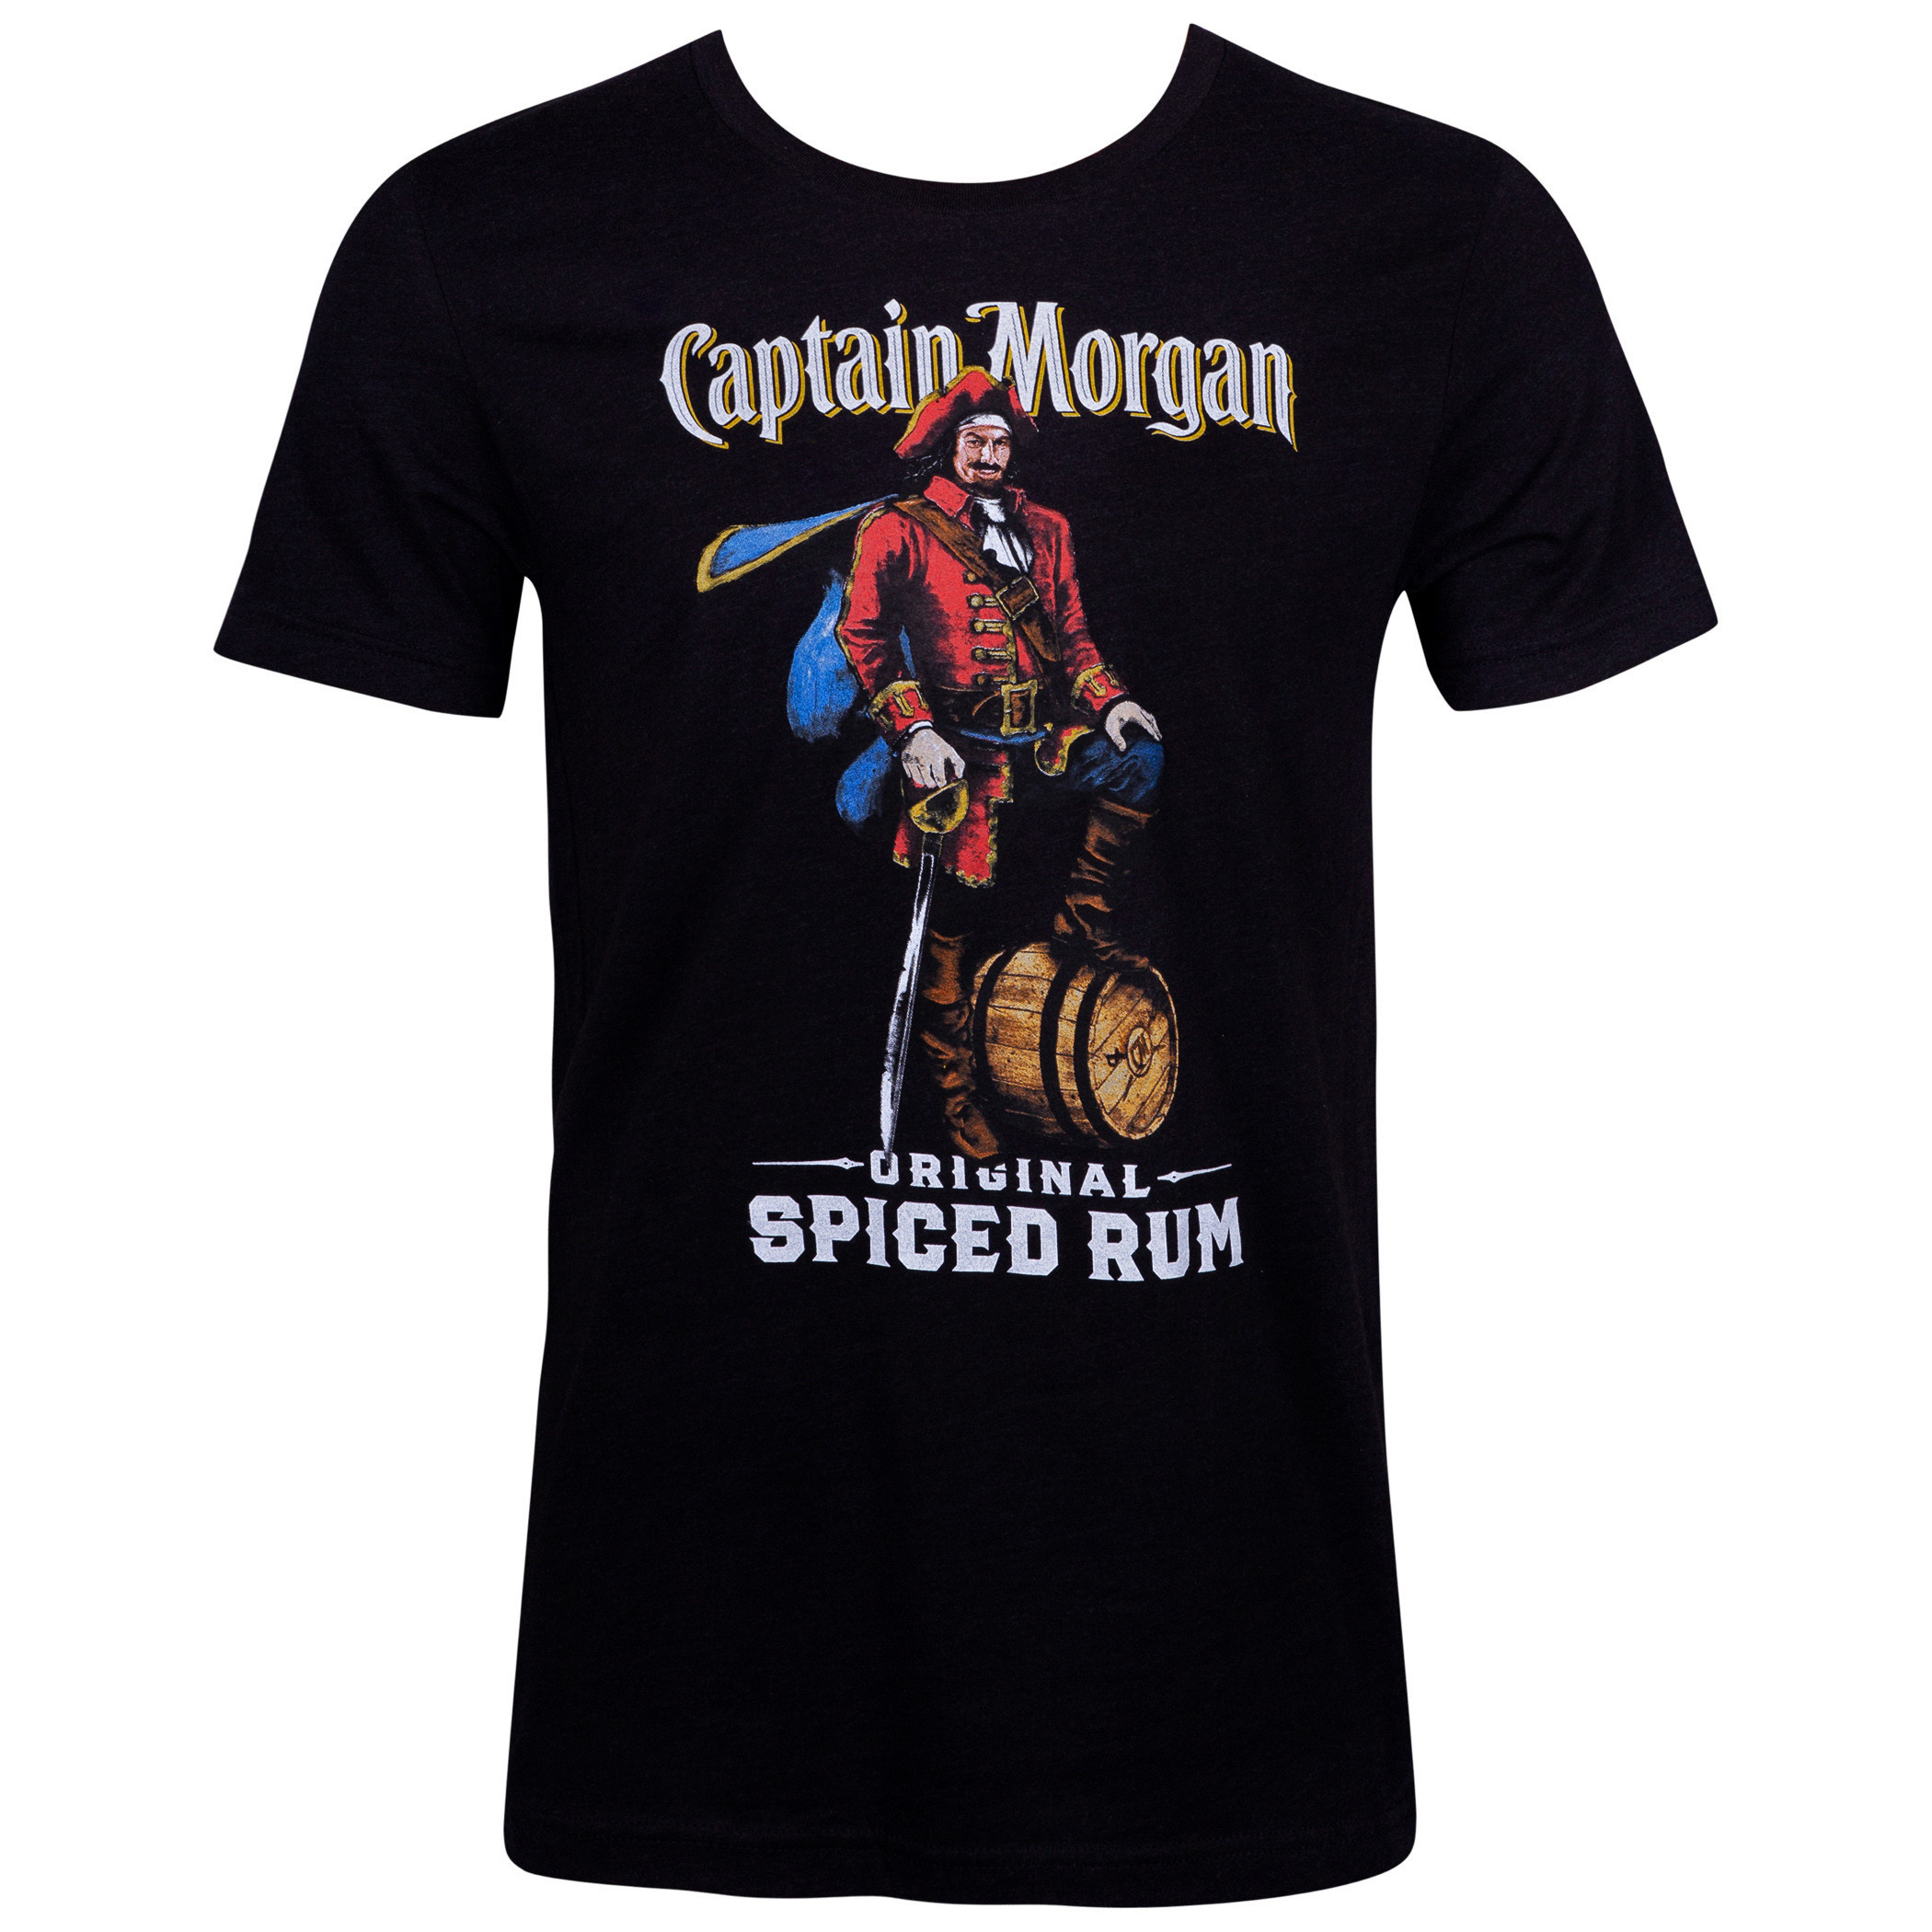 Captain Morgan Spiced Rum Black Tee Shirt